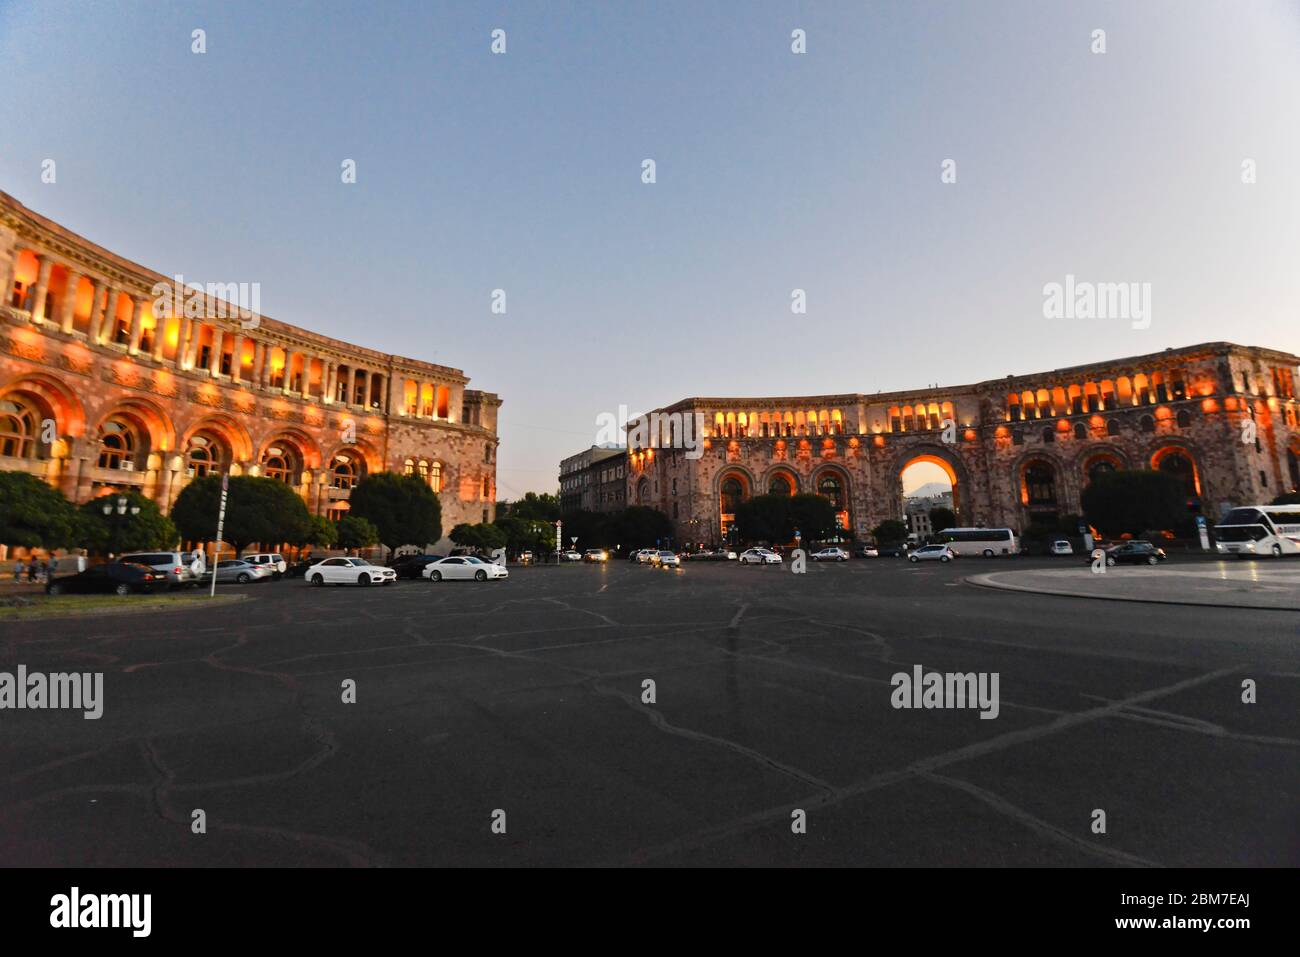 Erevan : crépuscule sur la place de la République : Bâtiment du gouvernement de la République d'Arménie, syndicats et immeuble de communication Banque D'Images